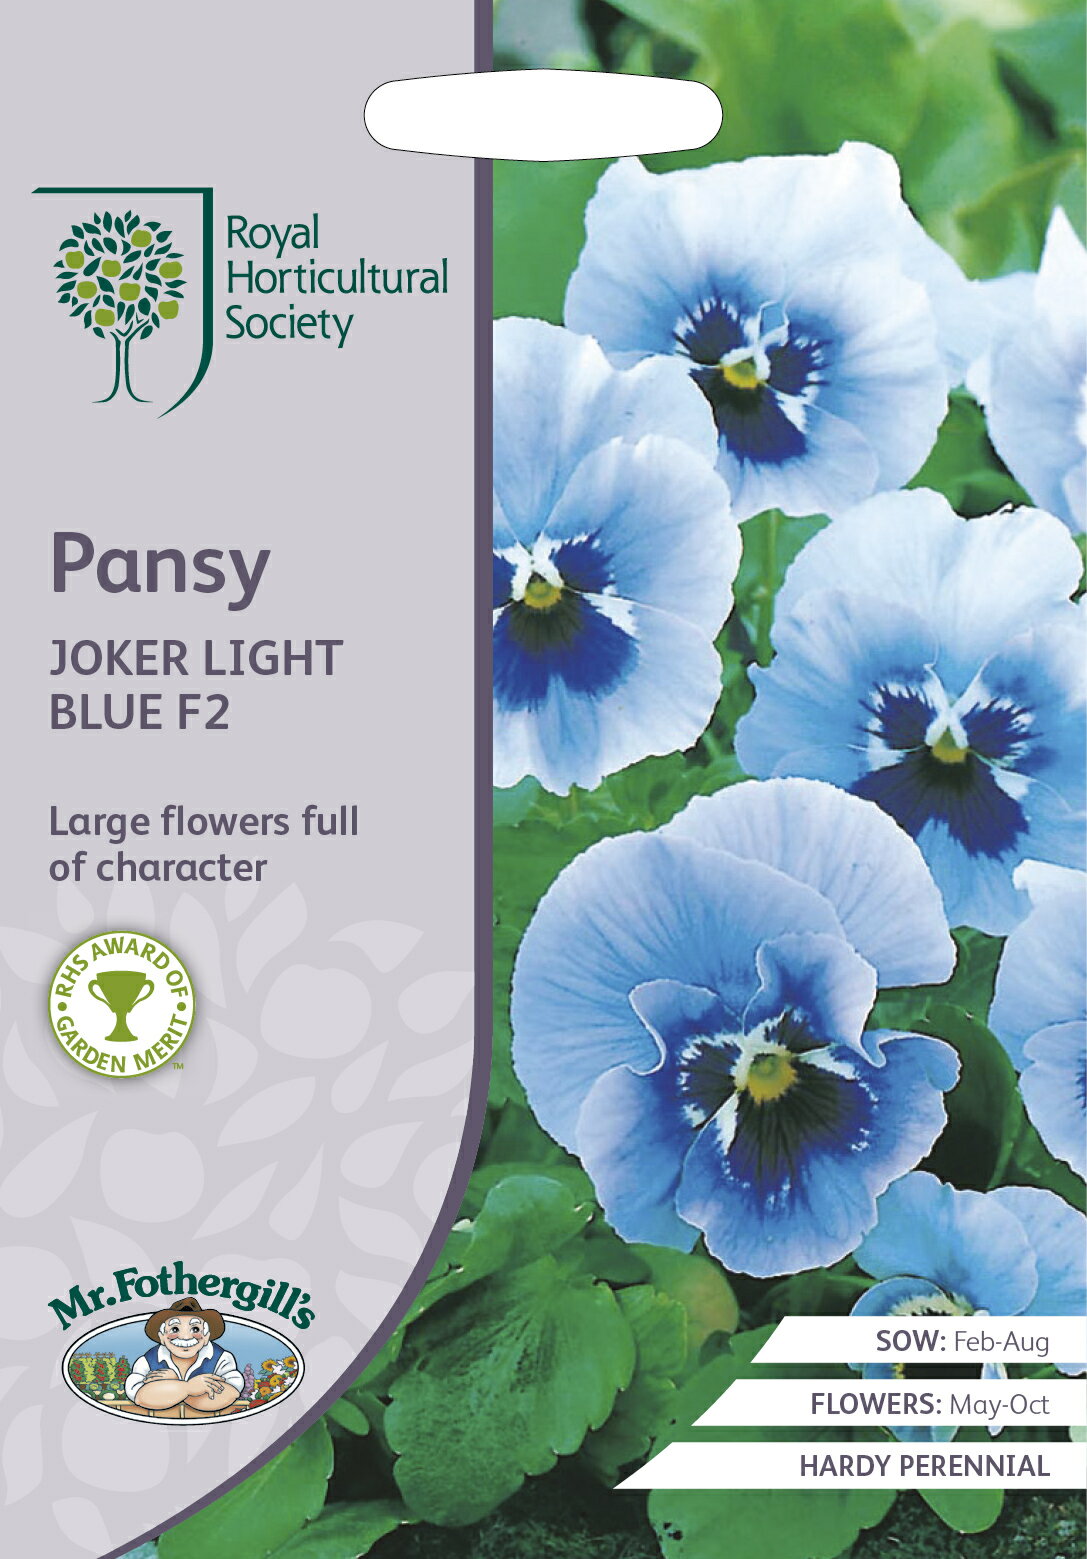 【種子】Mr.Fothergill's Seeds Royal Horticultural Society Pansy JOKER LIGHT BLUE F2 パンジー ジョーカー ライトブルー F2ミスター・フォザーギルズシード